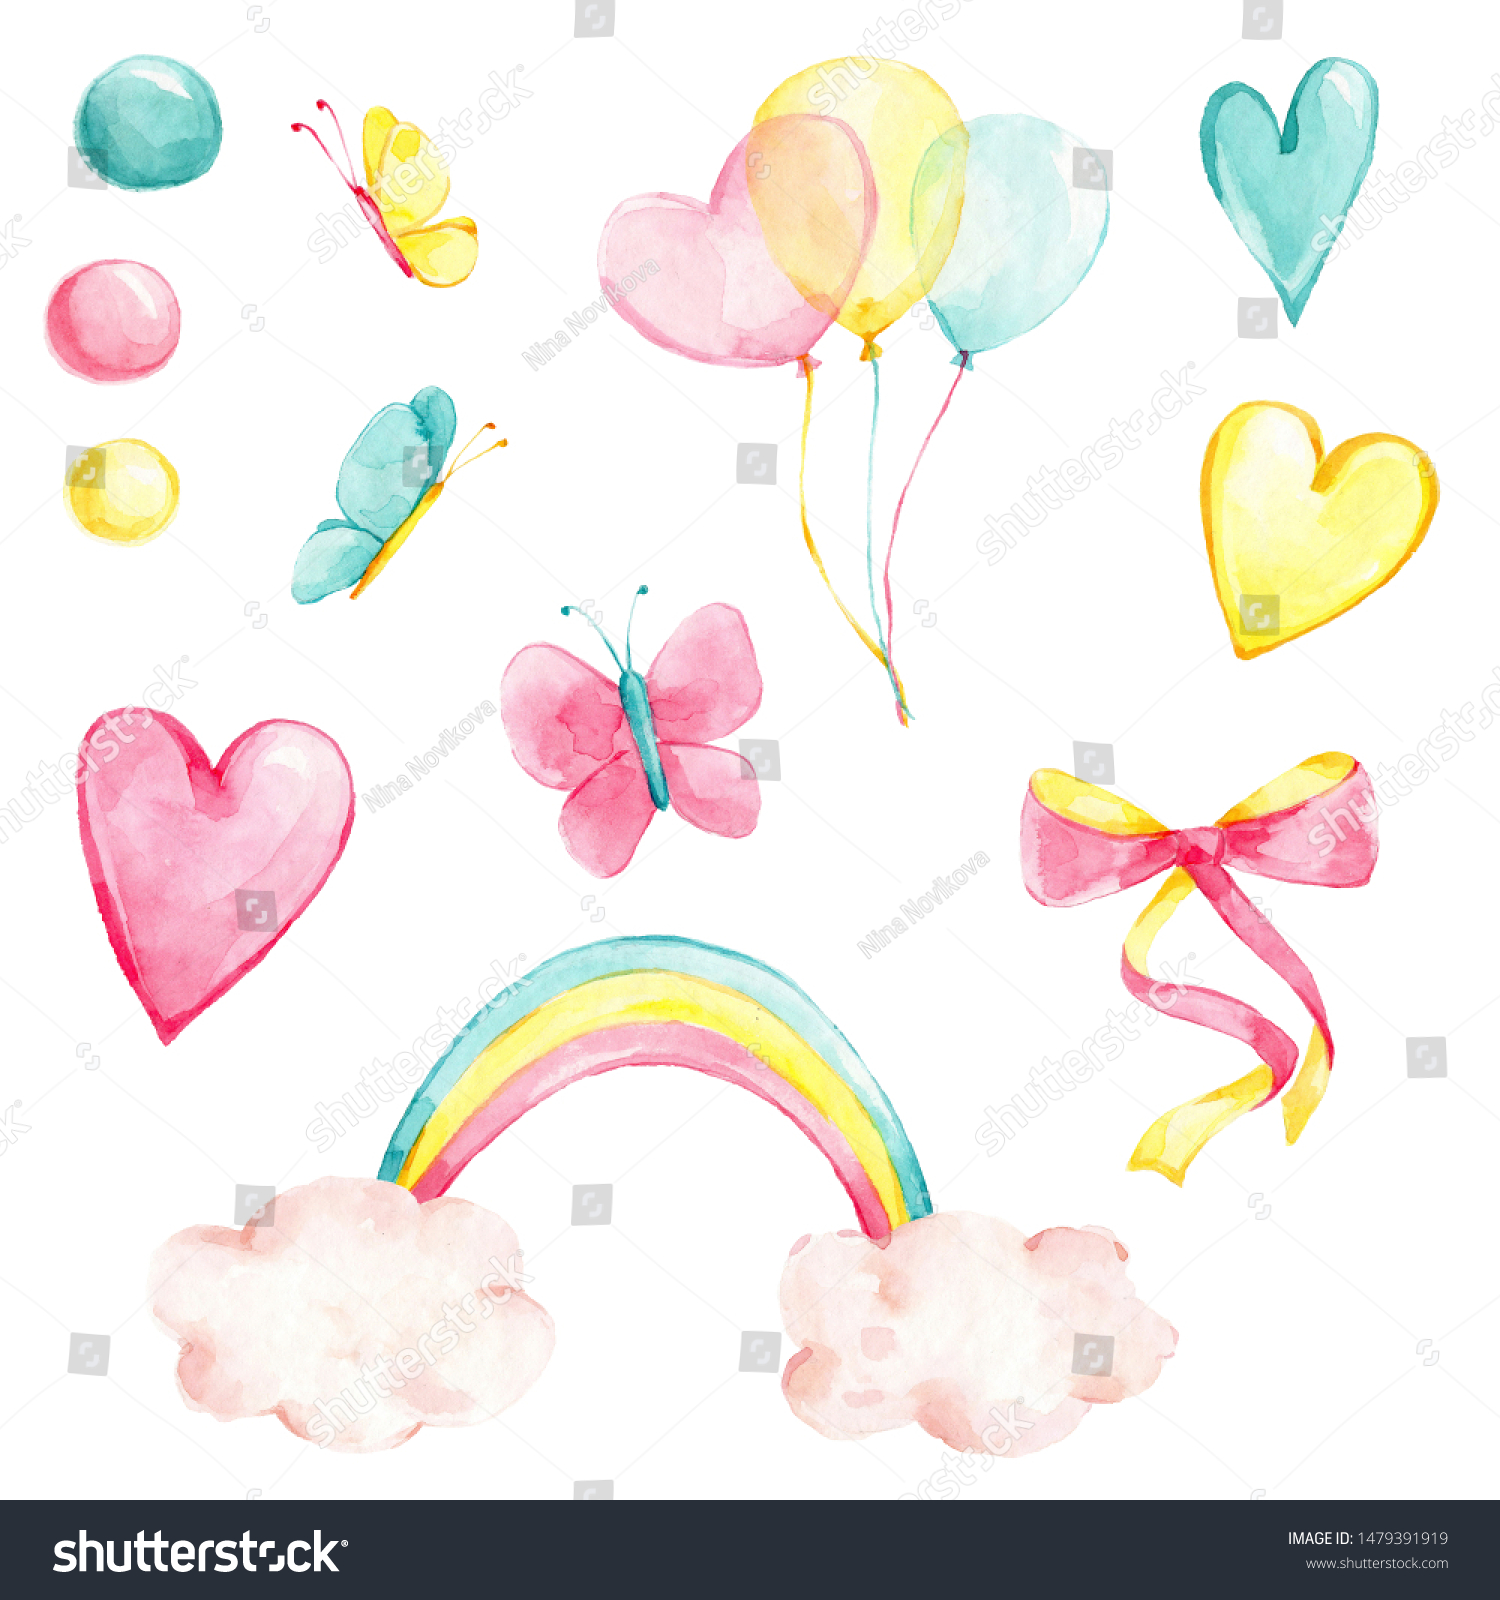 クリエイティブな虹 パステル風船 ピンク 黄色と青のハート 円 かわいい蝶 ピンクと黄色のリボン 蝶結び を使った水彩手描きのイラストセット 白い背景に のイラスト素材